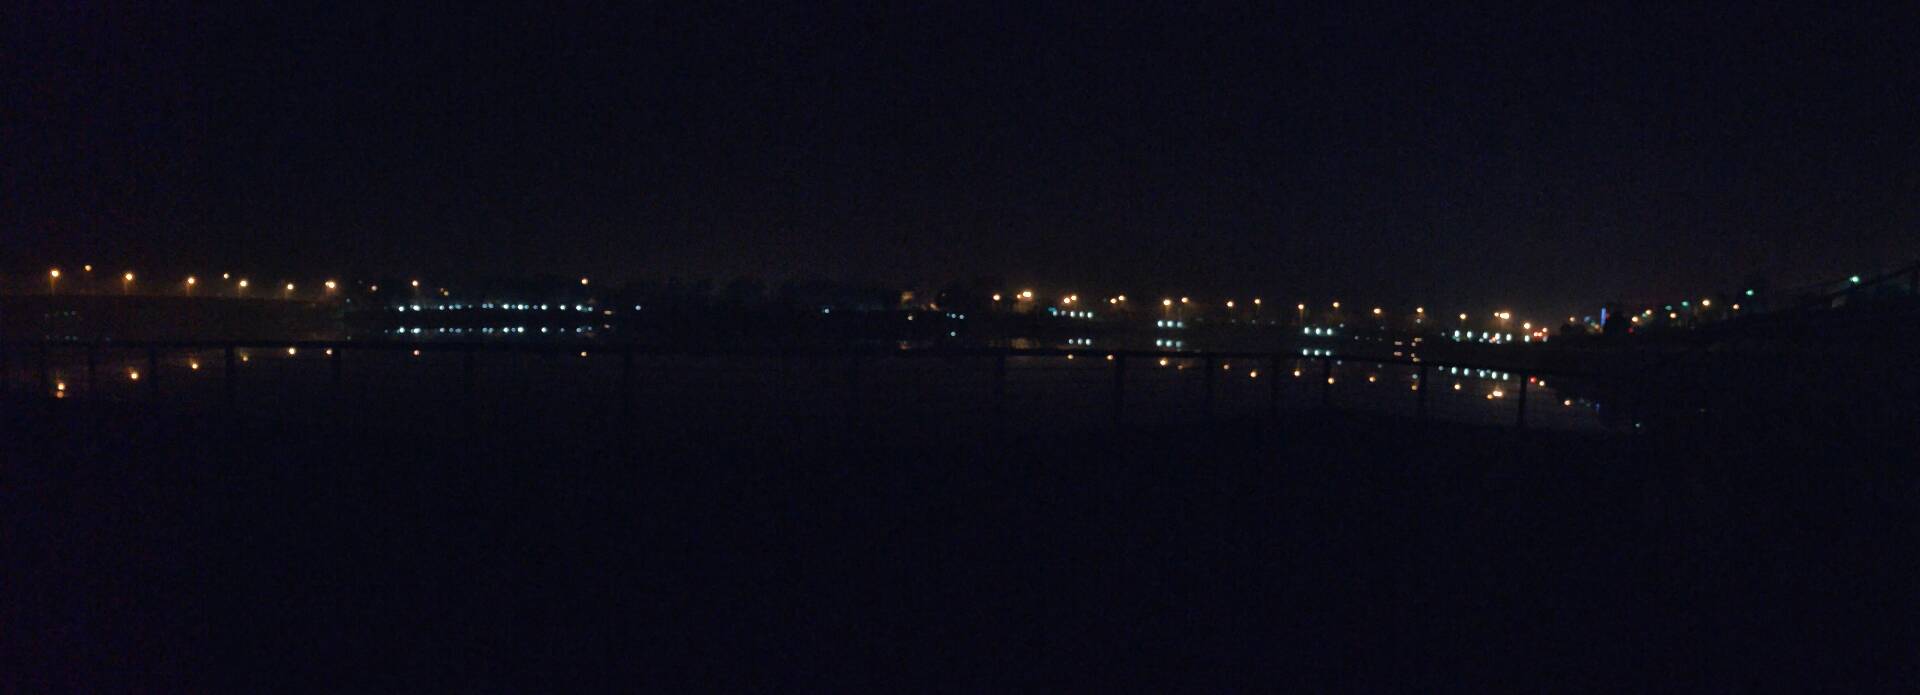 夜晚的湖边 2年前